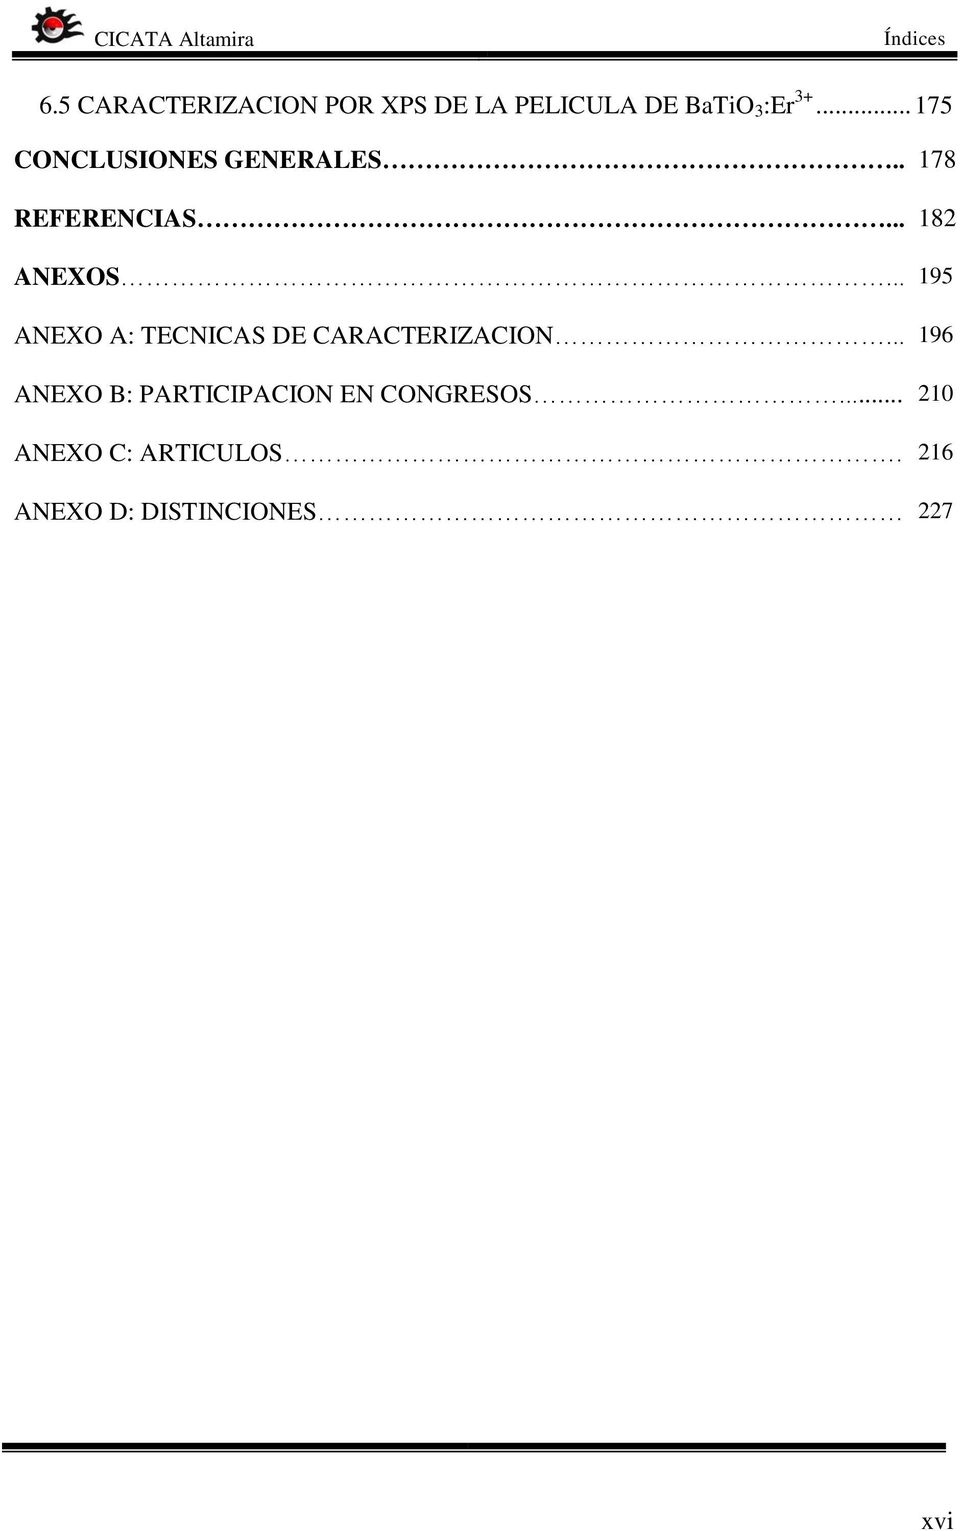 .. 195 ANEXO A: TECNICAS DE CARACTERIZACION.